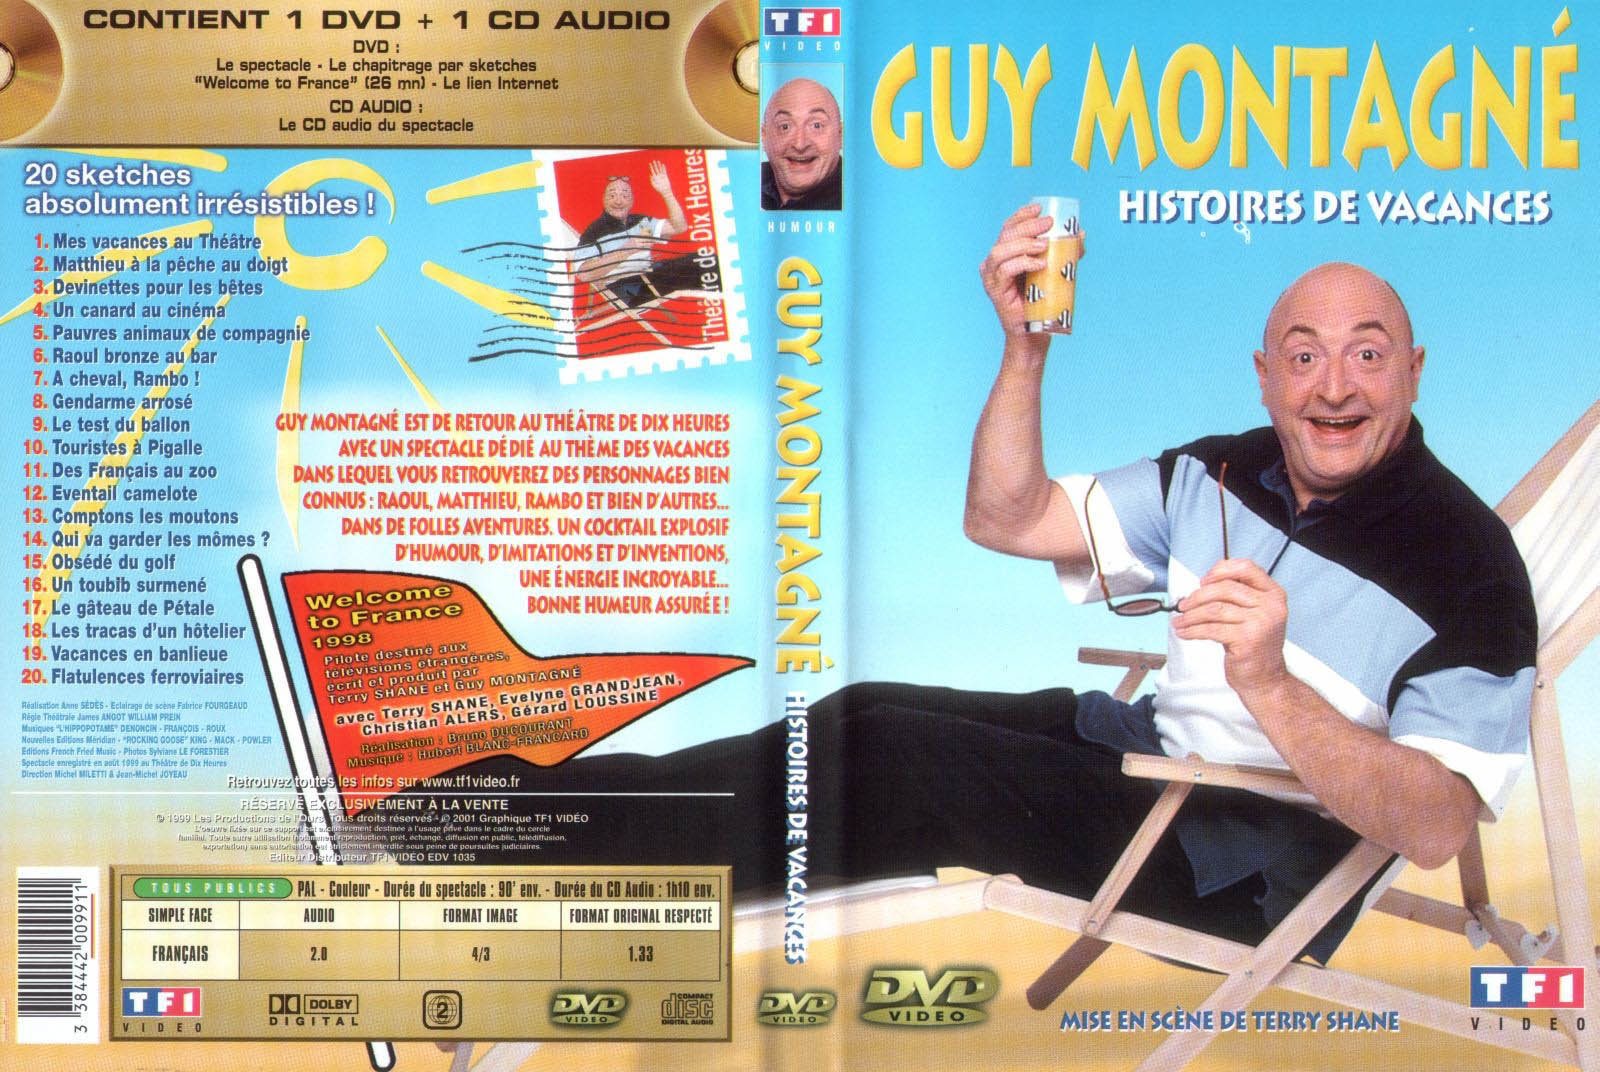 Jaquette DVD Guy Montagne histoires de vacances